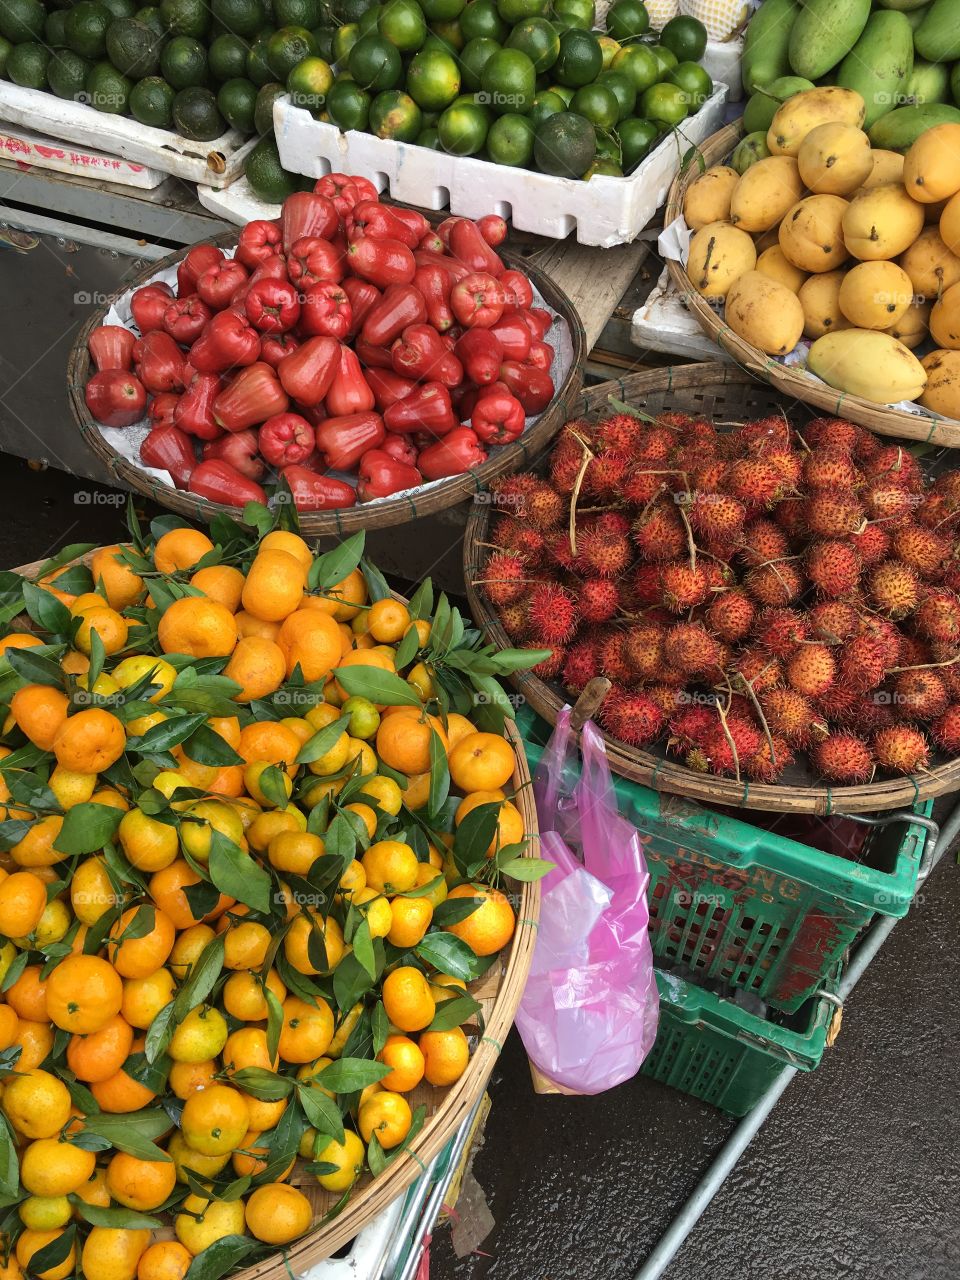 Variety of fruits at market